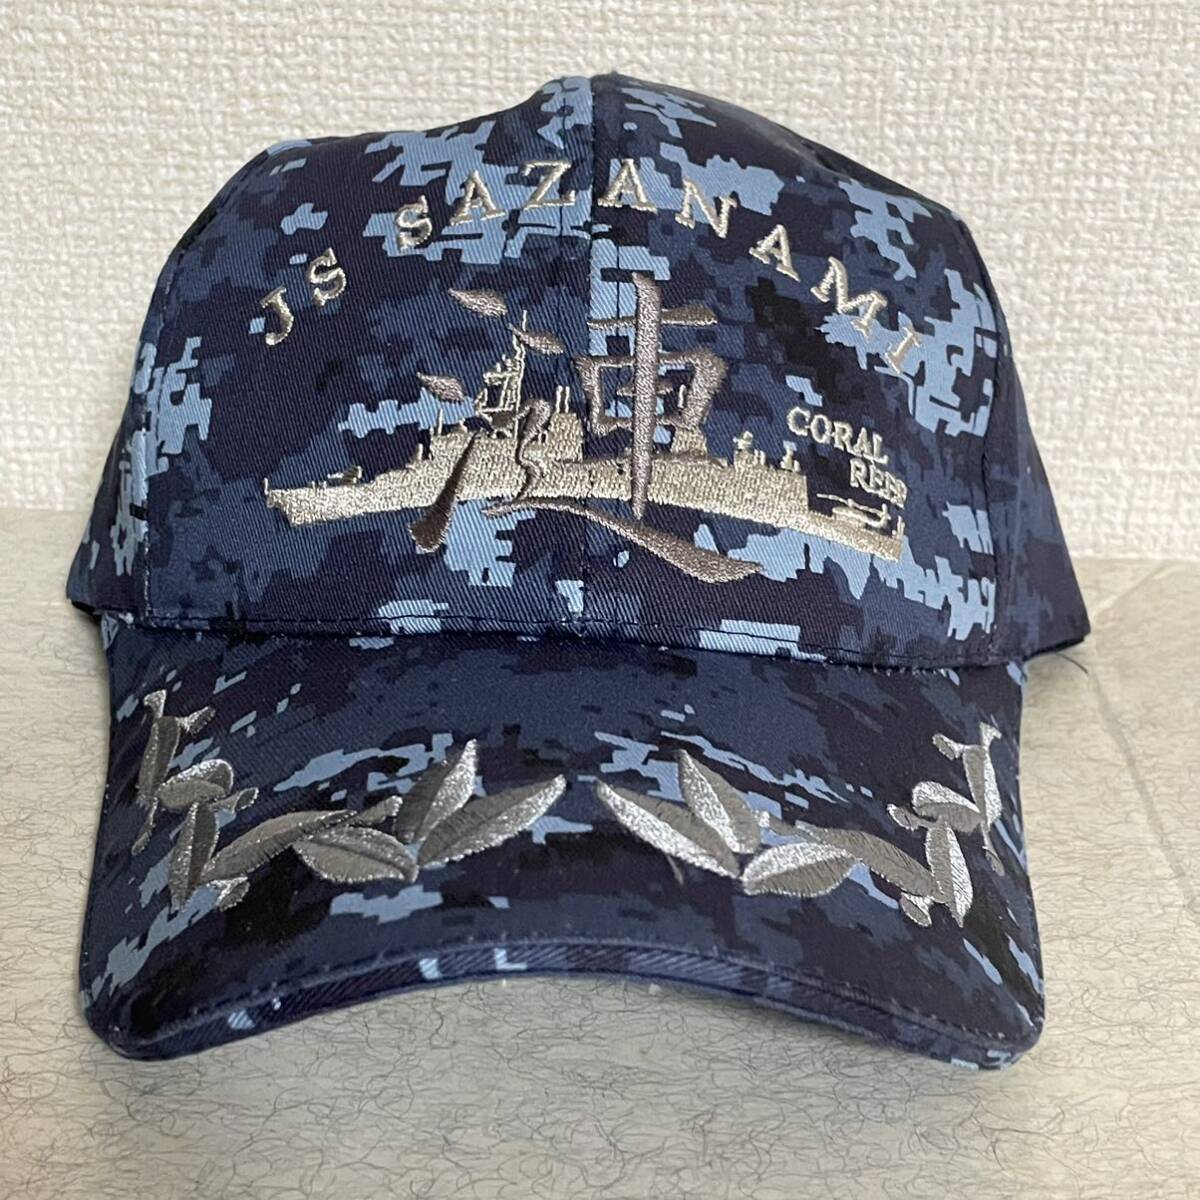 海上自衛隊 呉基地護衛艦さざなみ 漣佐官用迷彩識別帽・部隊帽 キャップの画像1